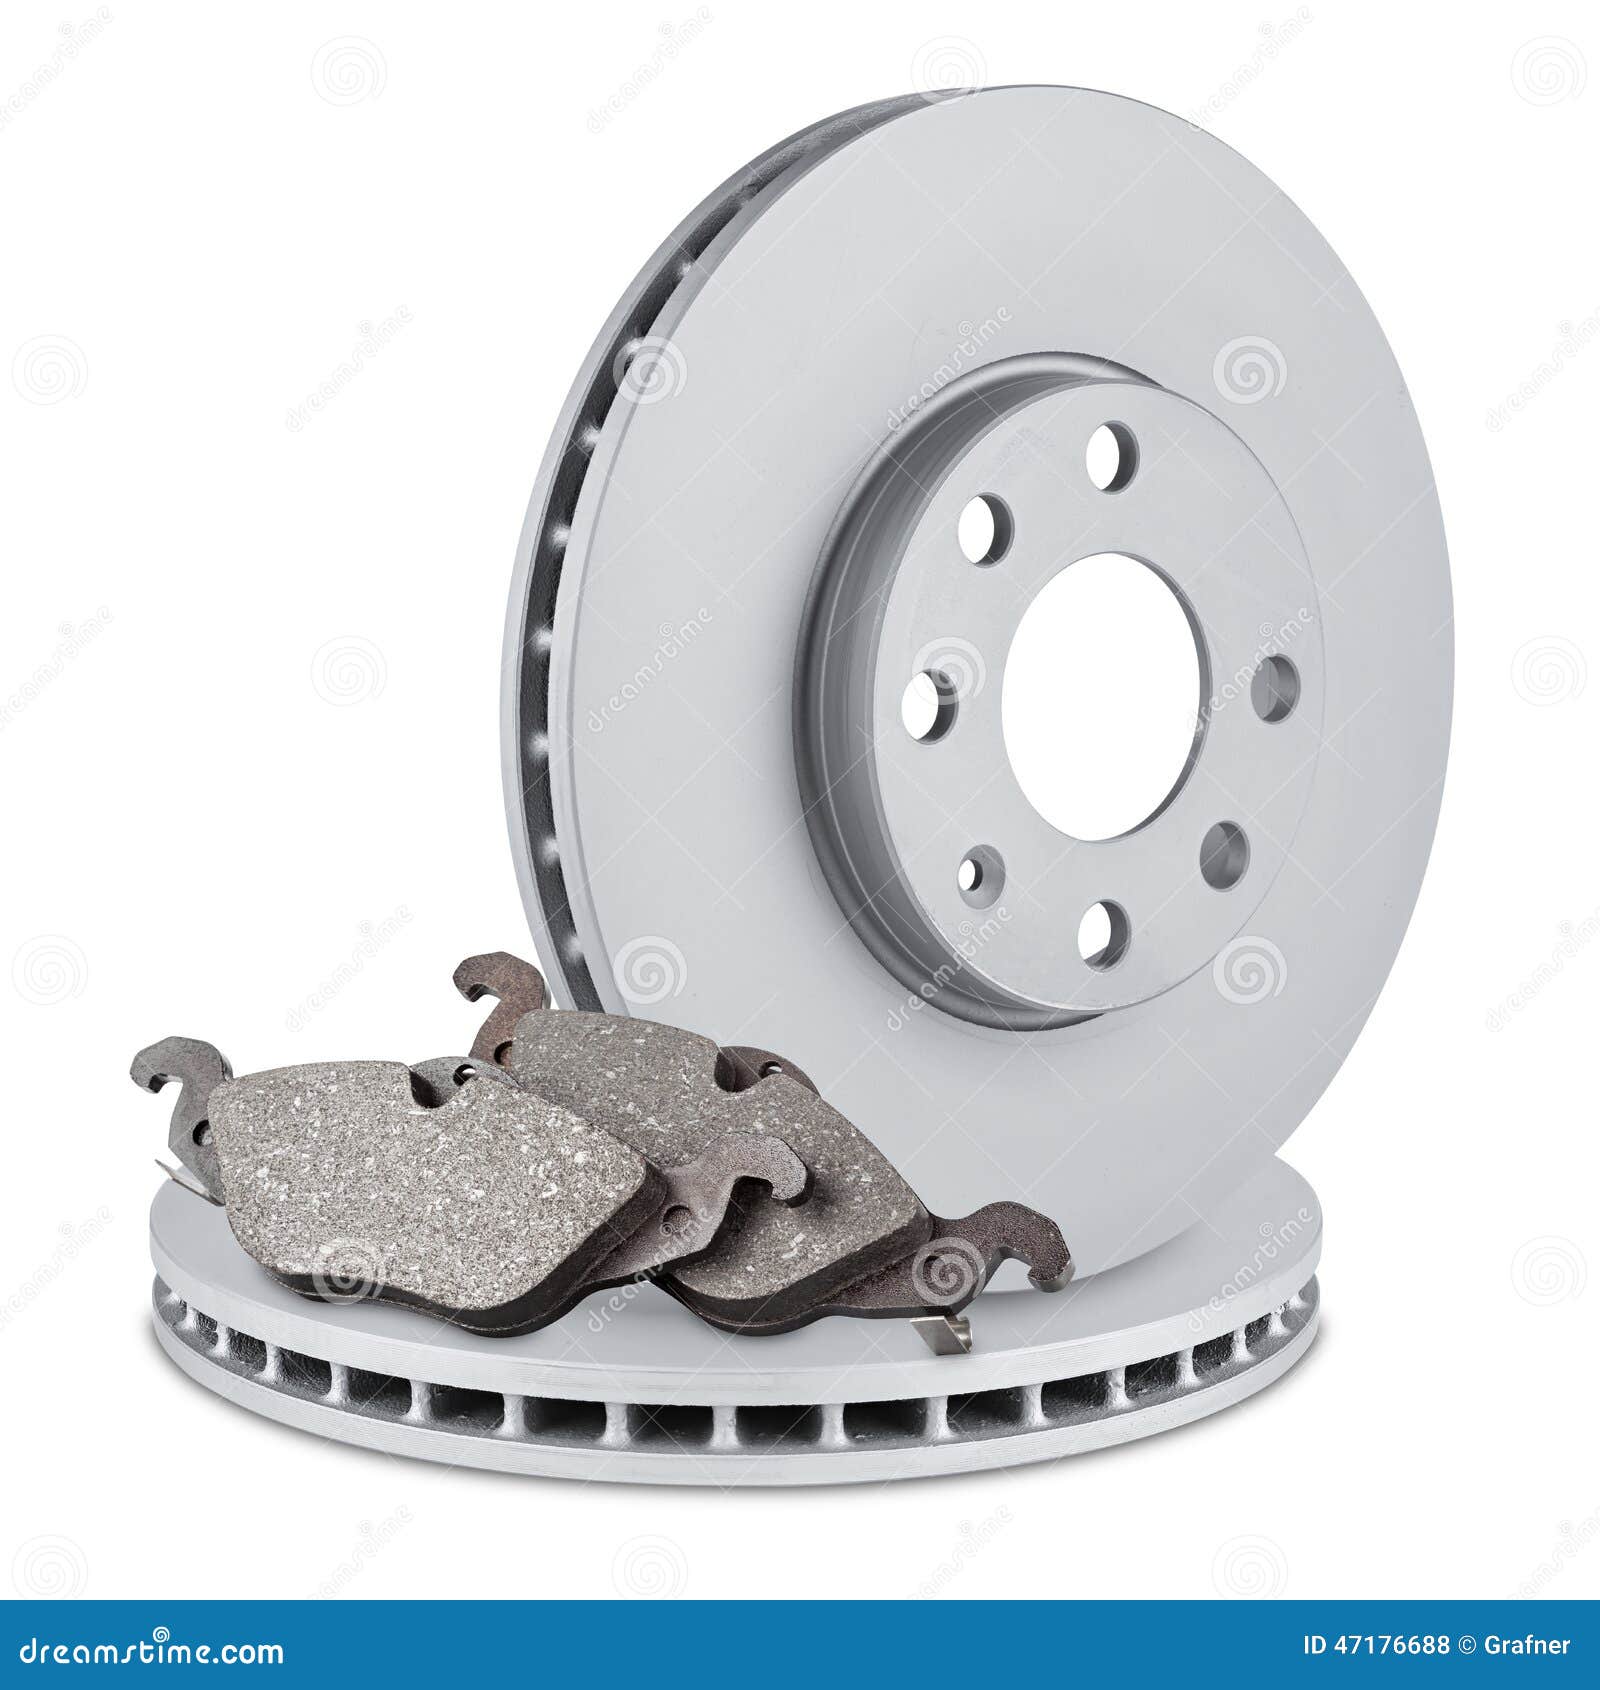 car brake discs and pads